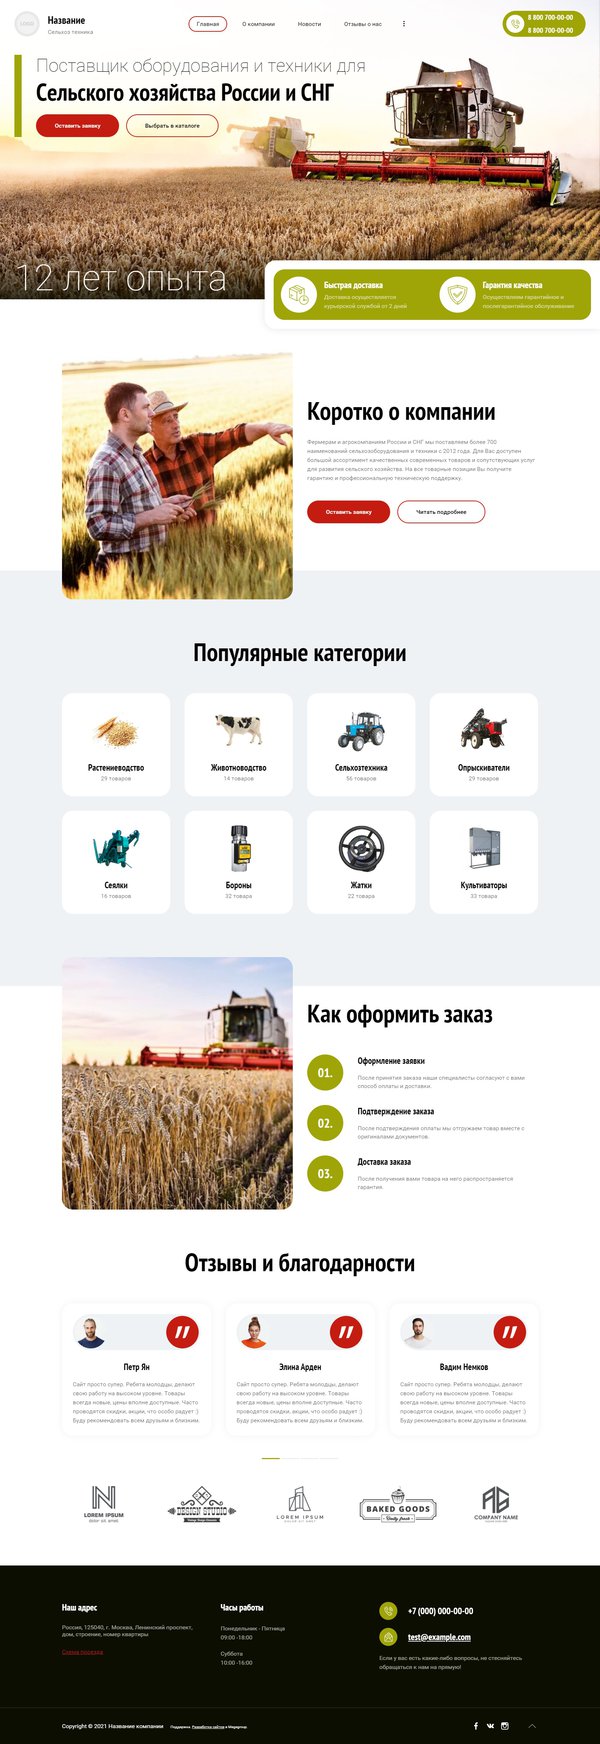 Готовый Сайт-Бизнес № 3249029 - Оборудование для сельского хозяйства (Десктопная версия)